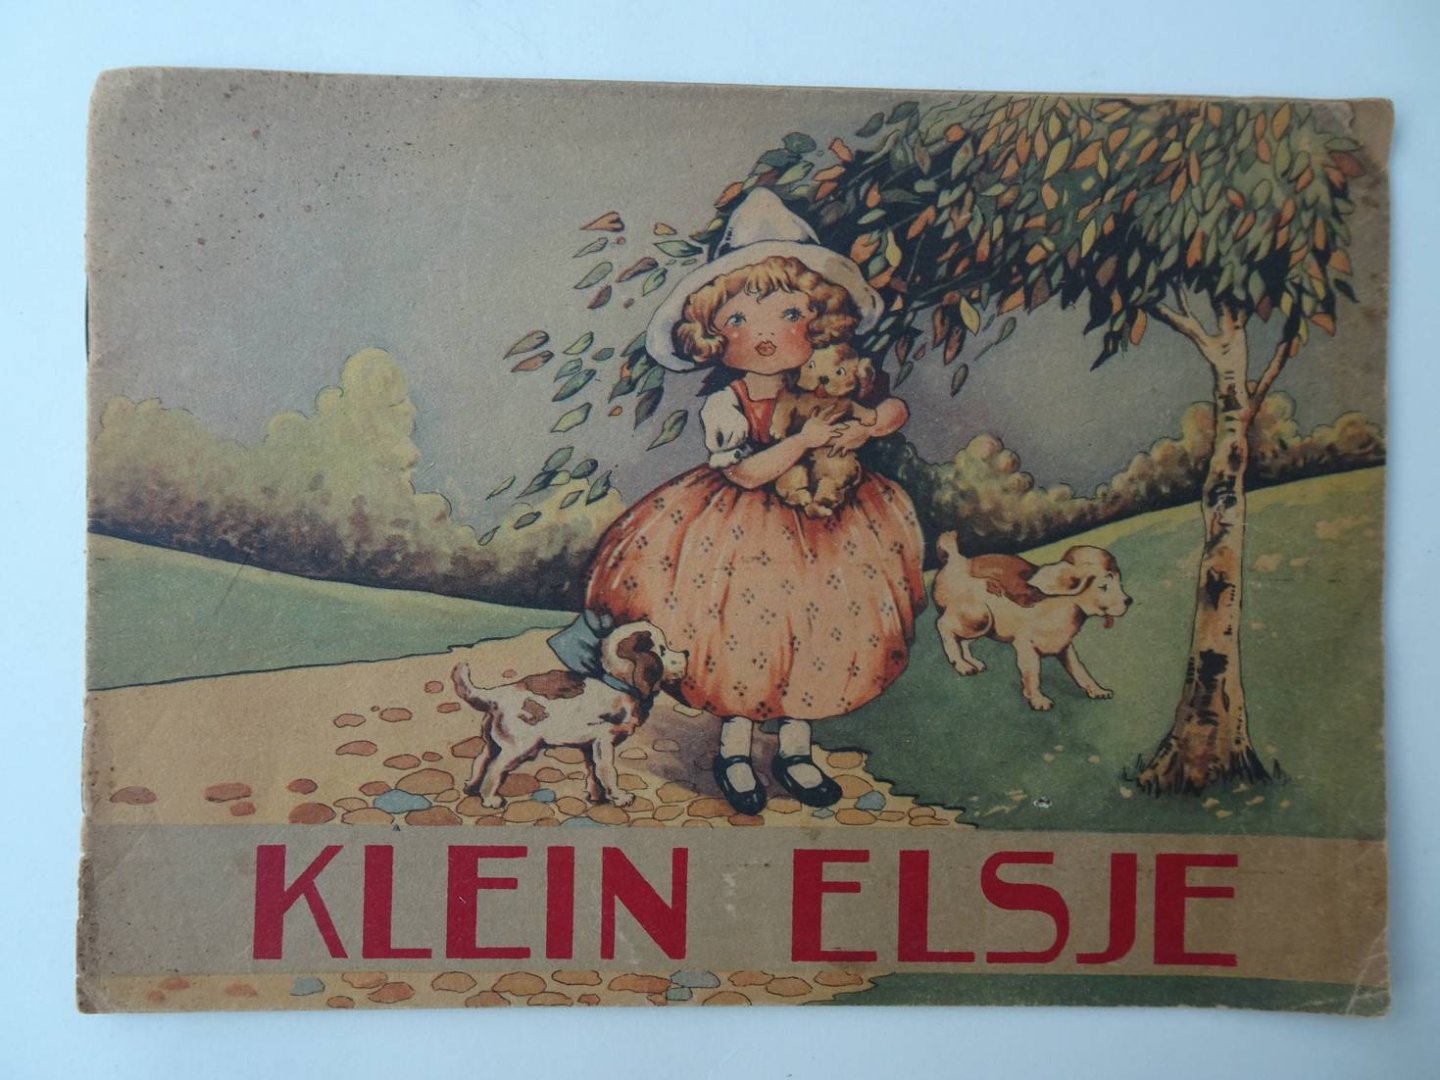  - Klein Elsje.